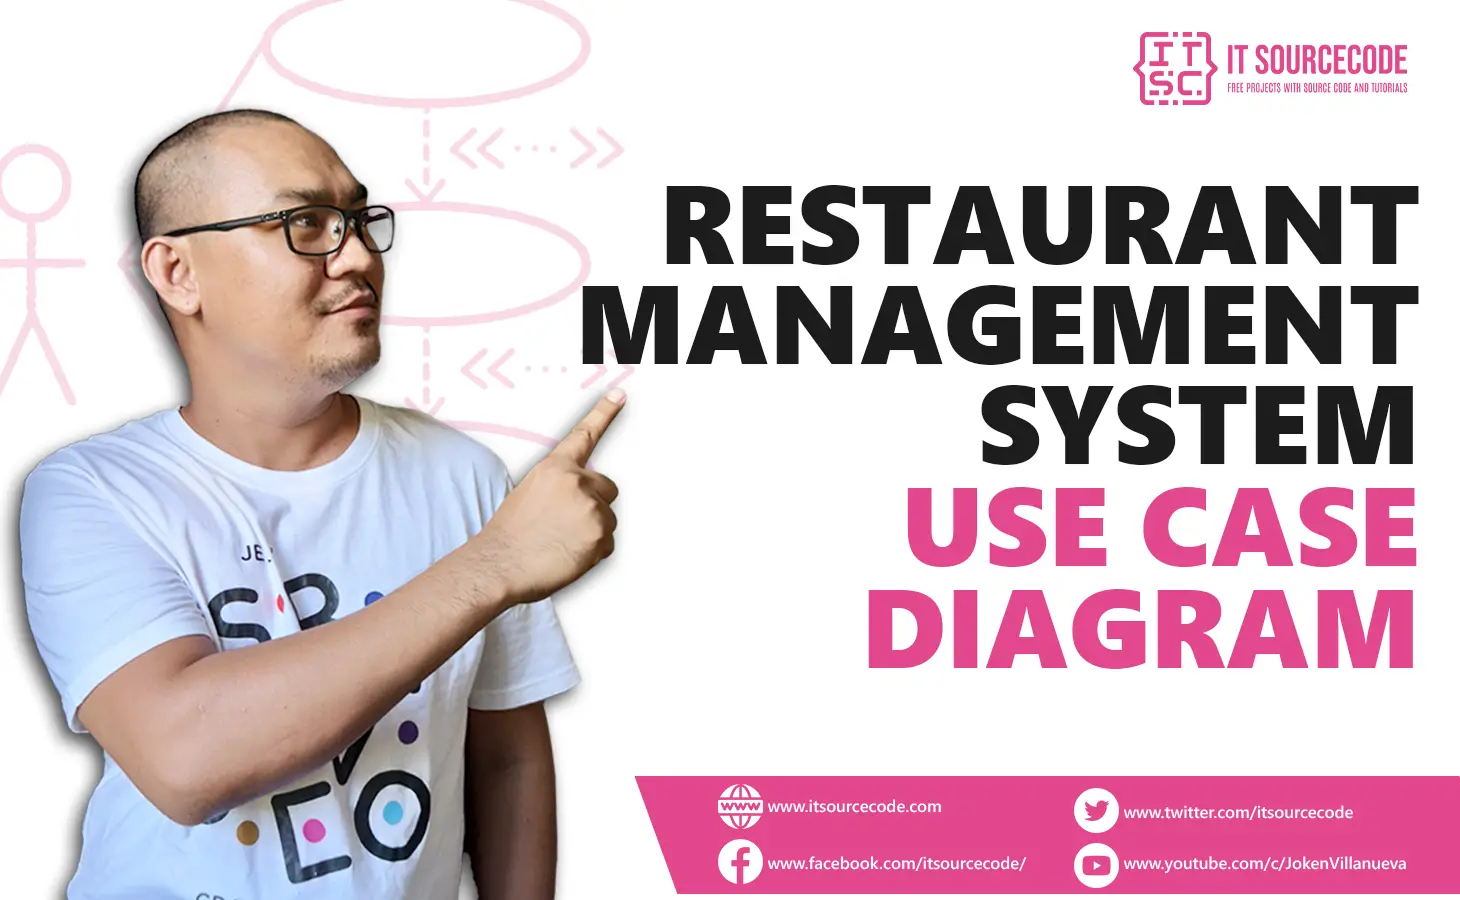 Use Case Diagram for Restaurant Management System